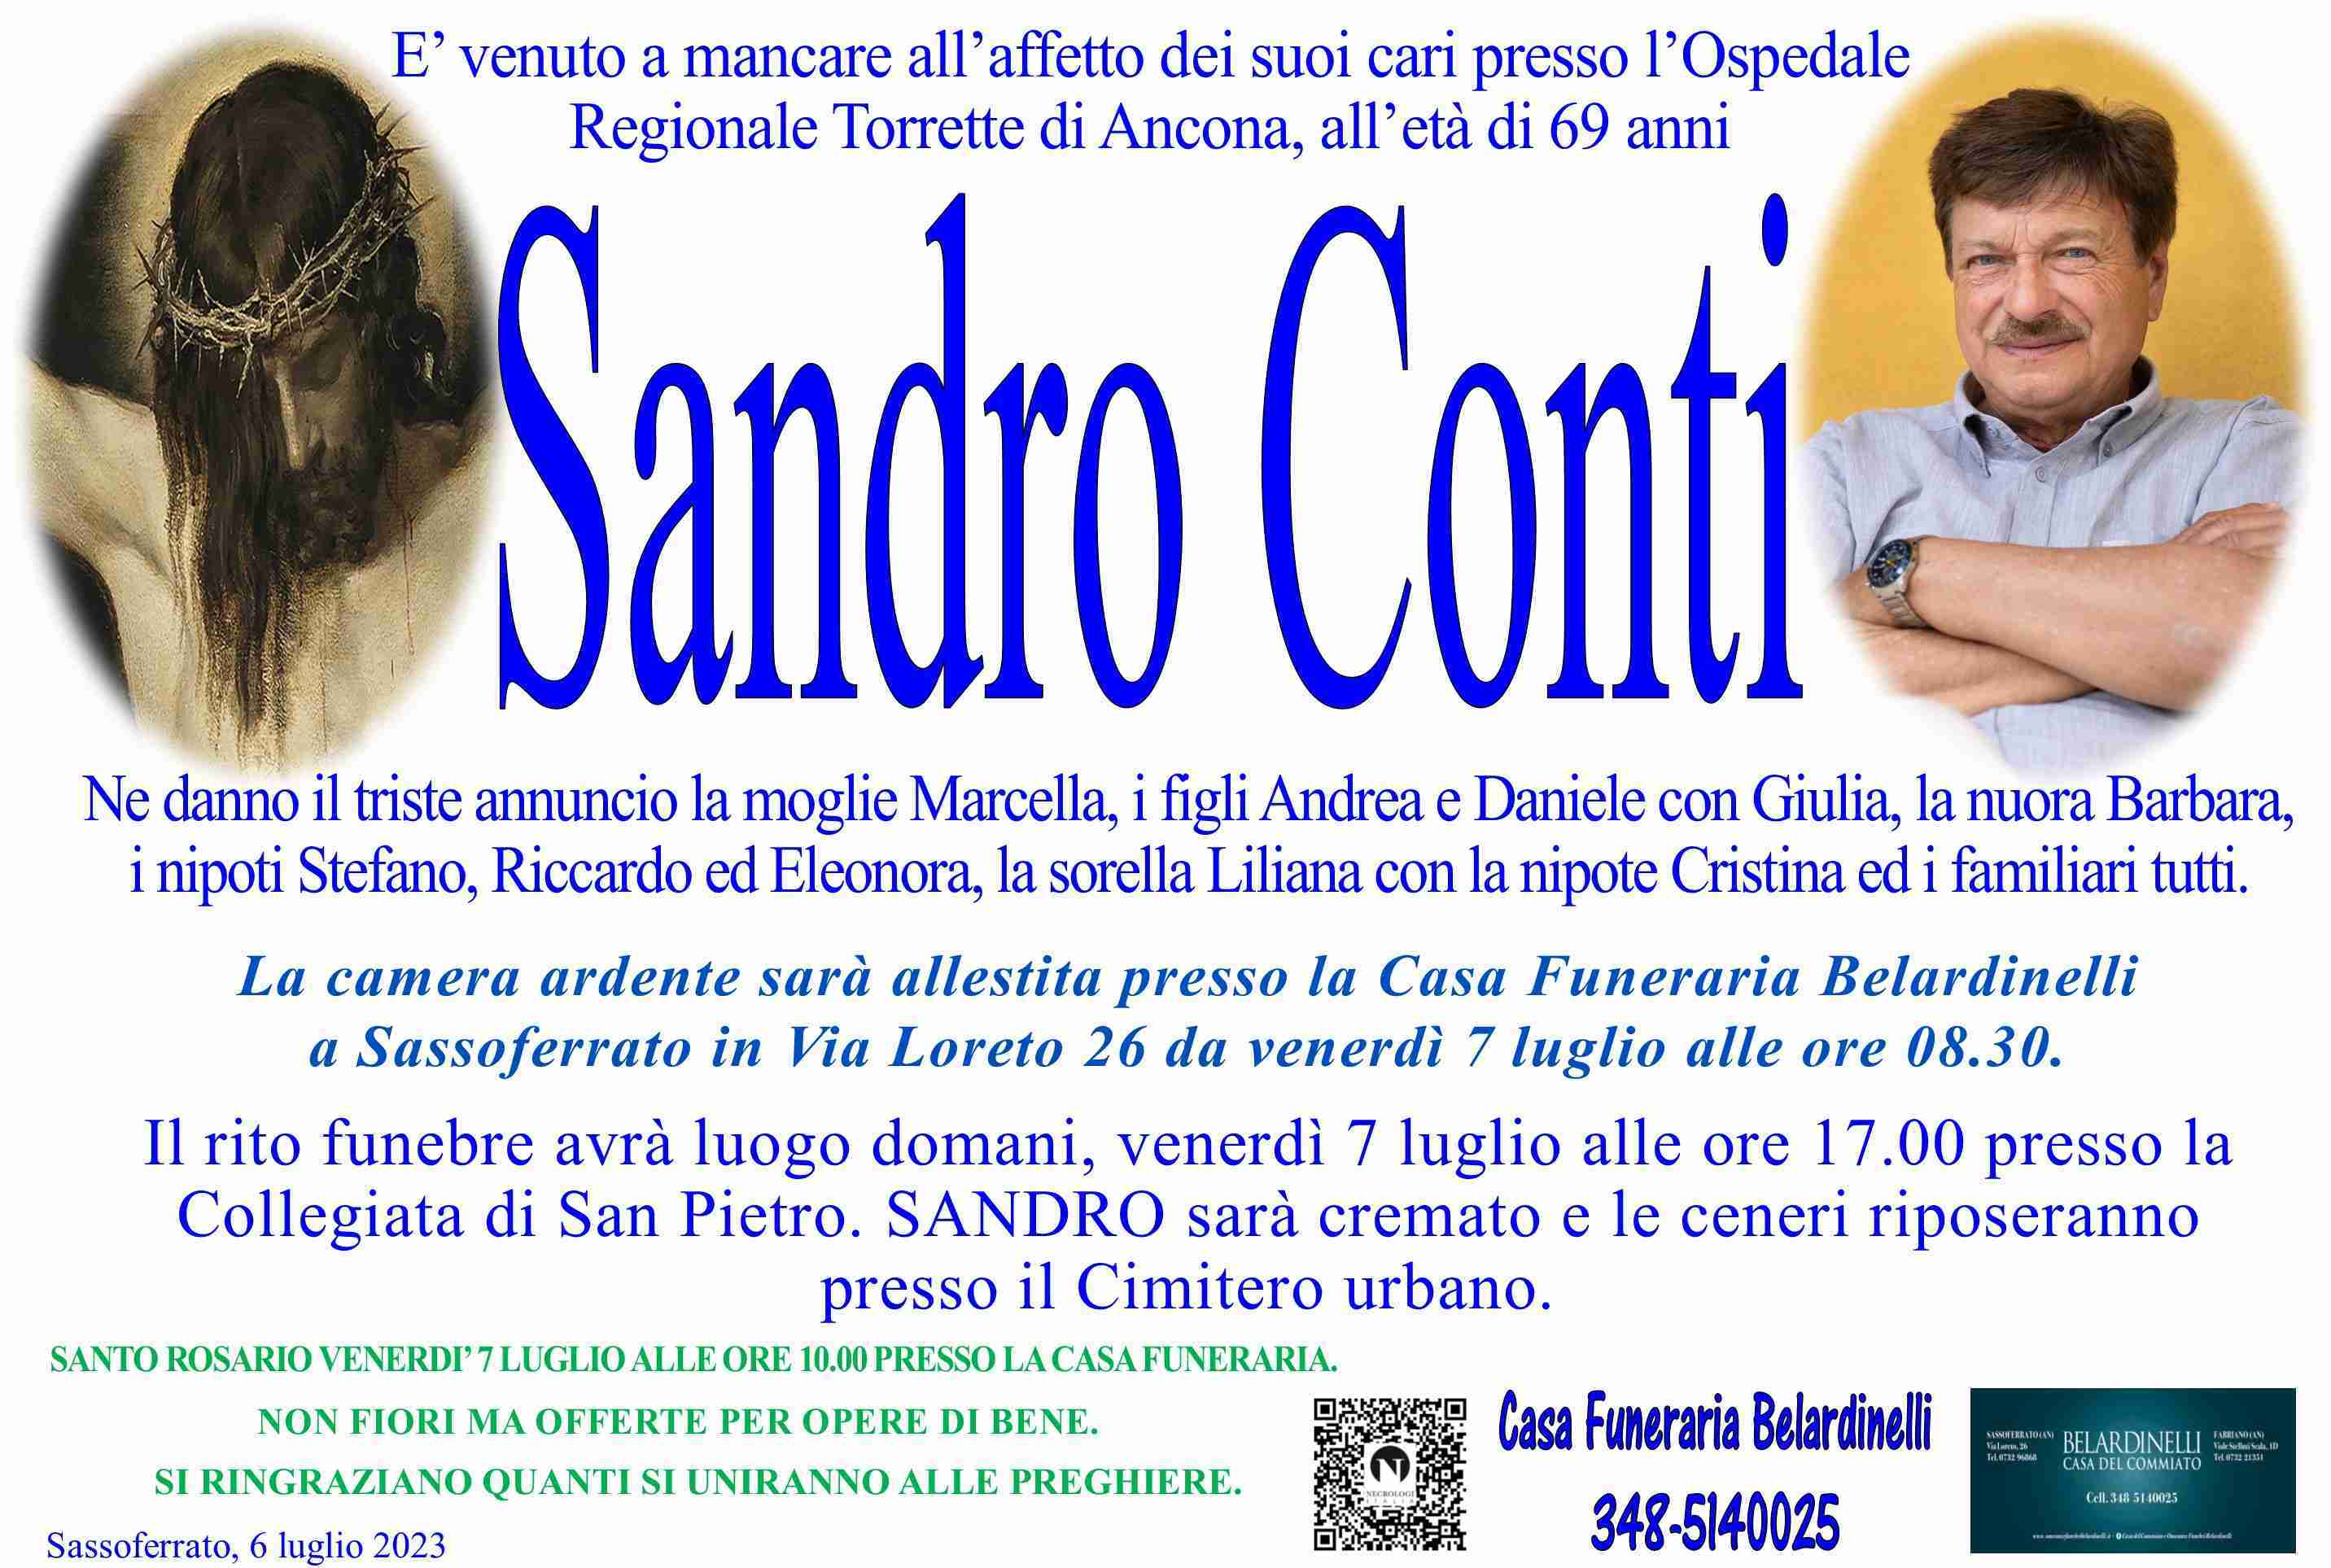 Sandro Conti